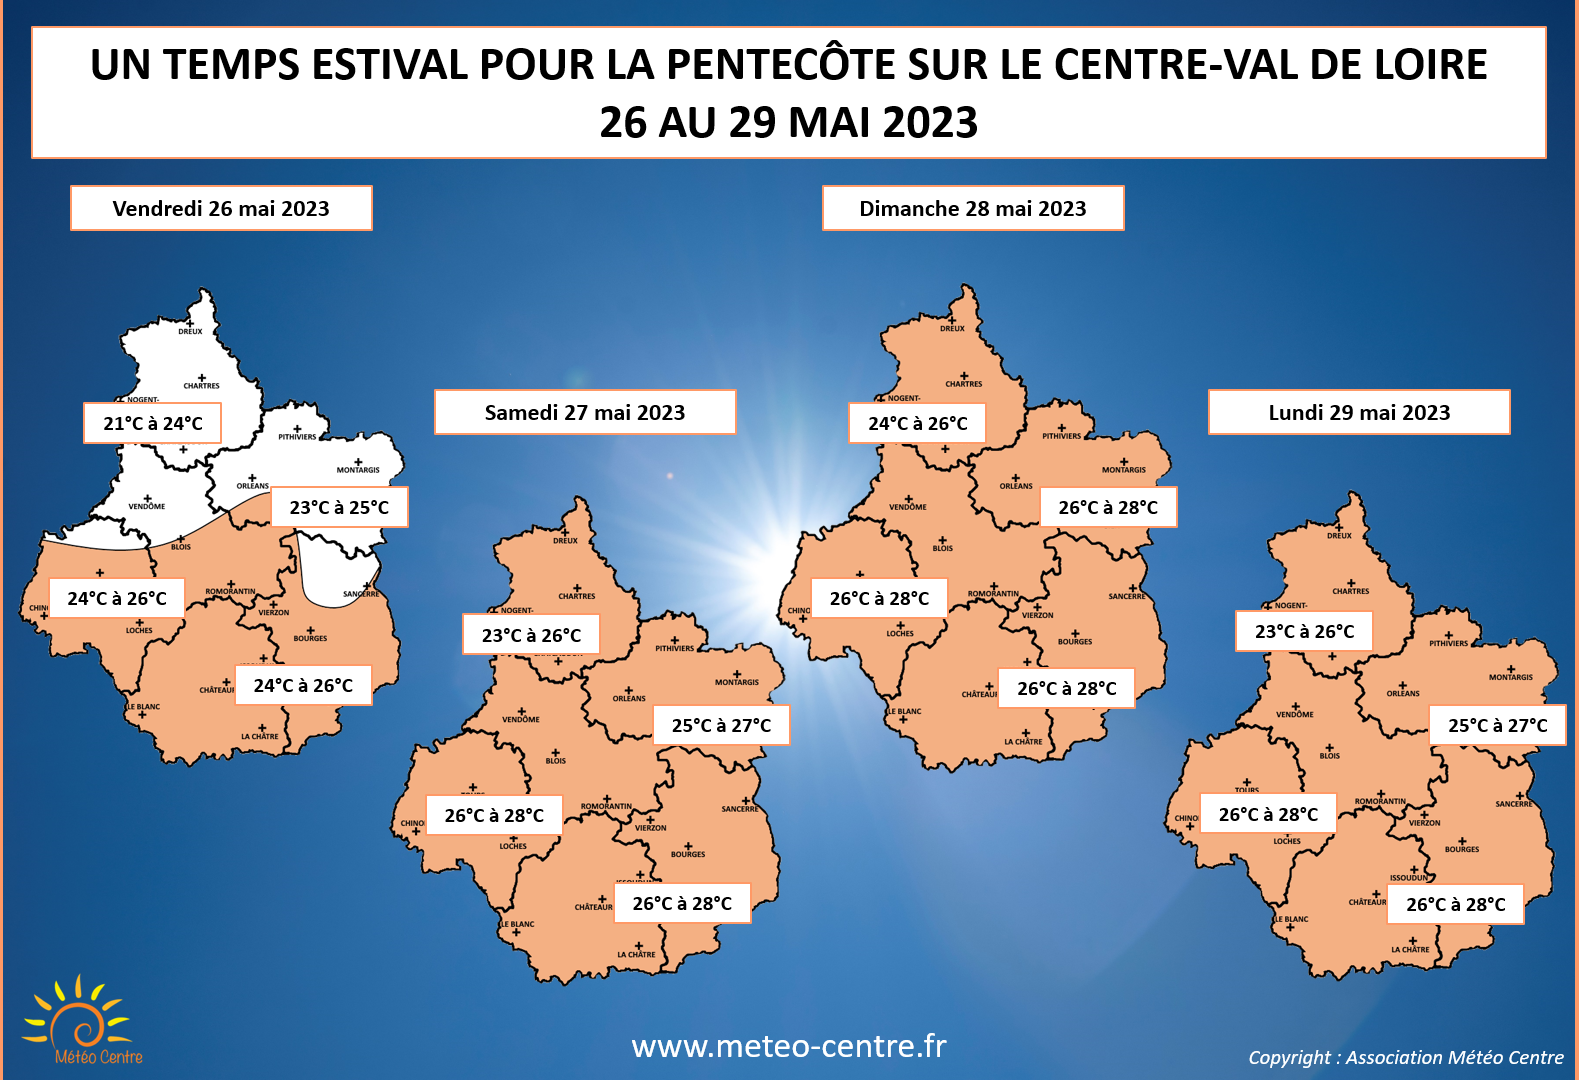 Températures maximales prévues du 26 au 29 mai 2023 sur le Centre - Val de Loire (copyright : Association Météo Centre).